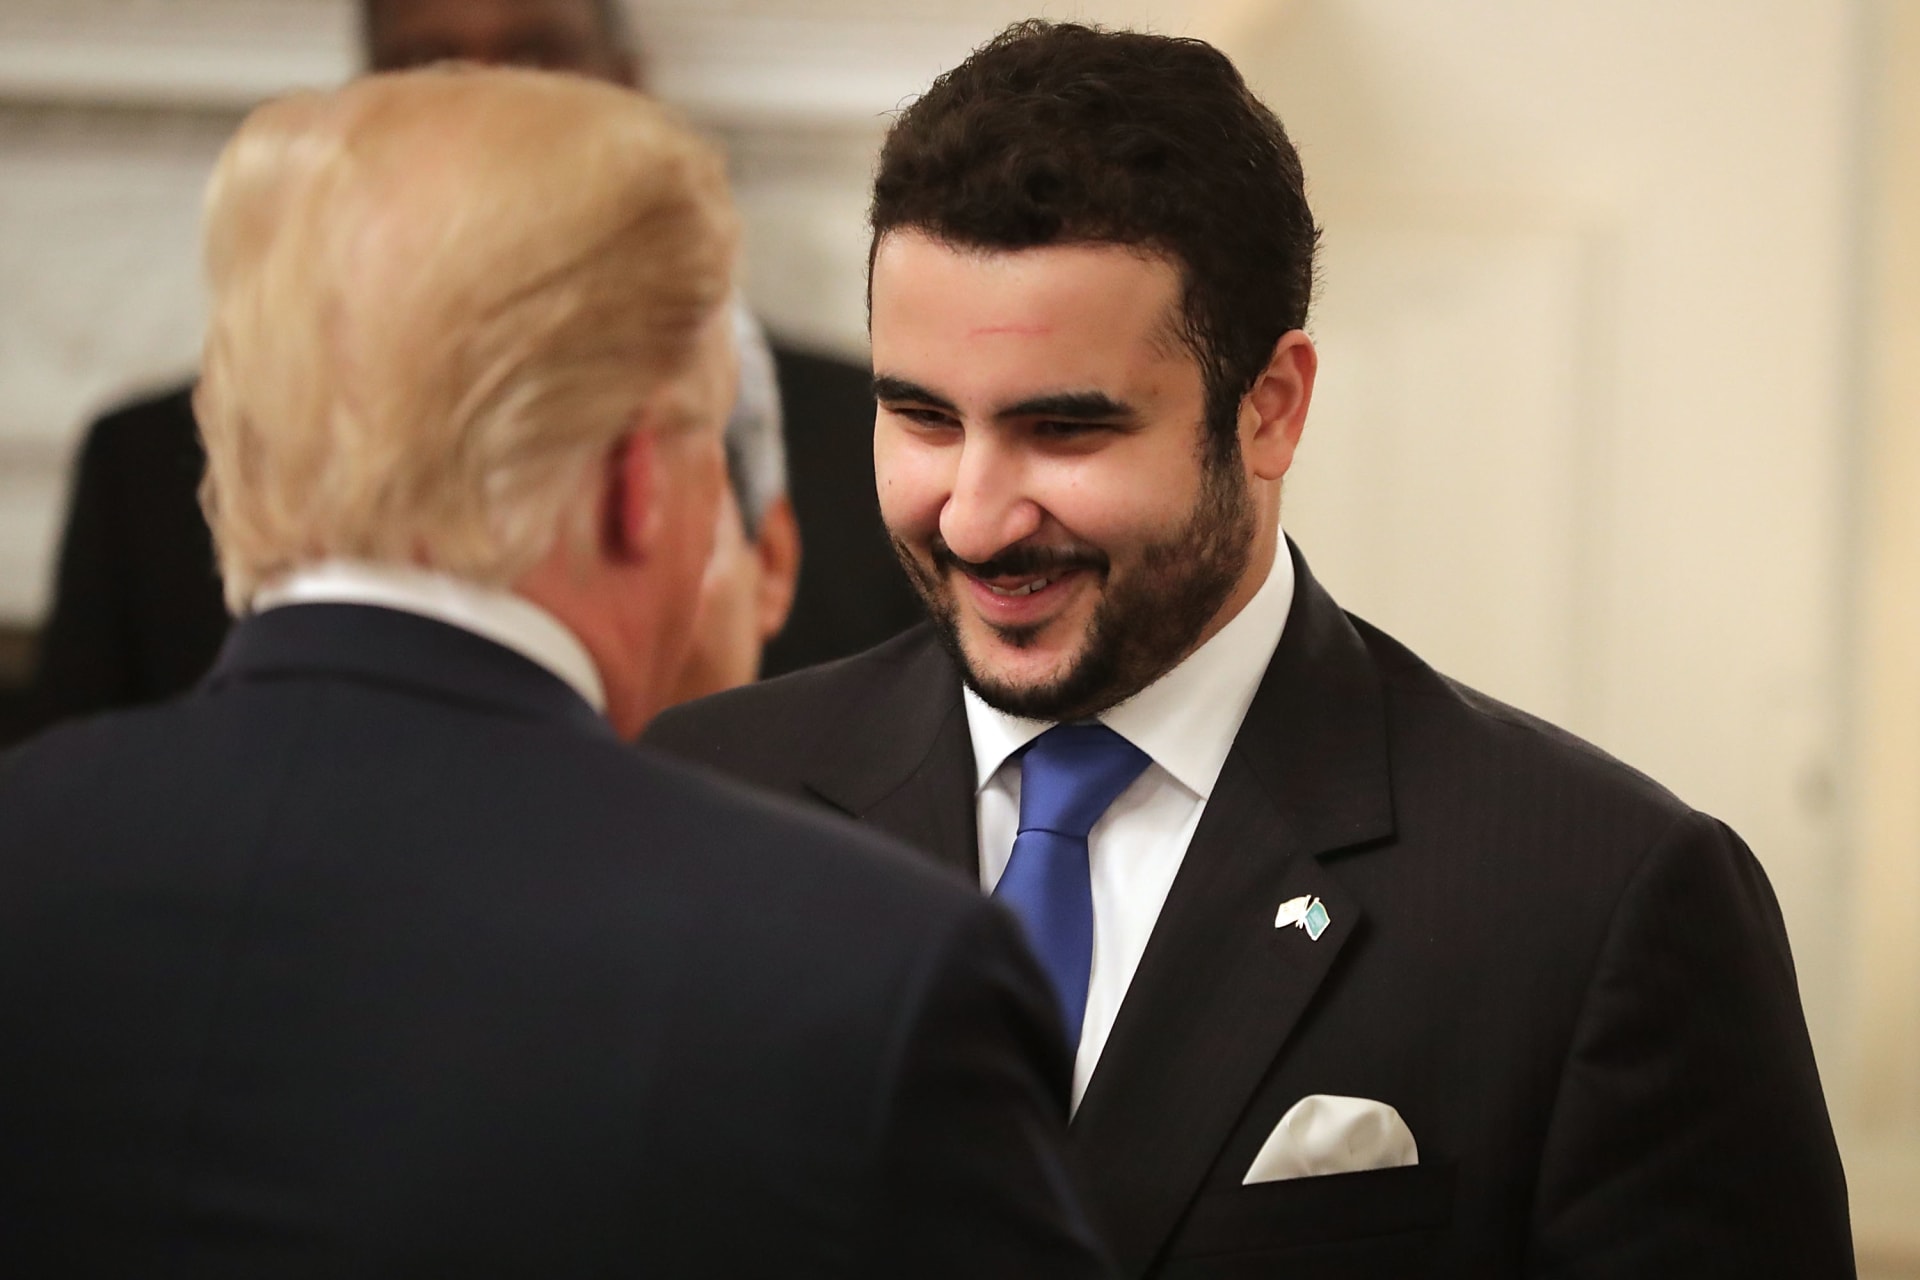 خالد بن سلمان يصل واشنطن بأول زيارة رسمية بعد مغادرة منصبه وسط قضية خاشقجي